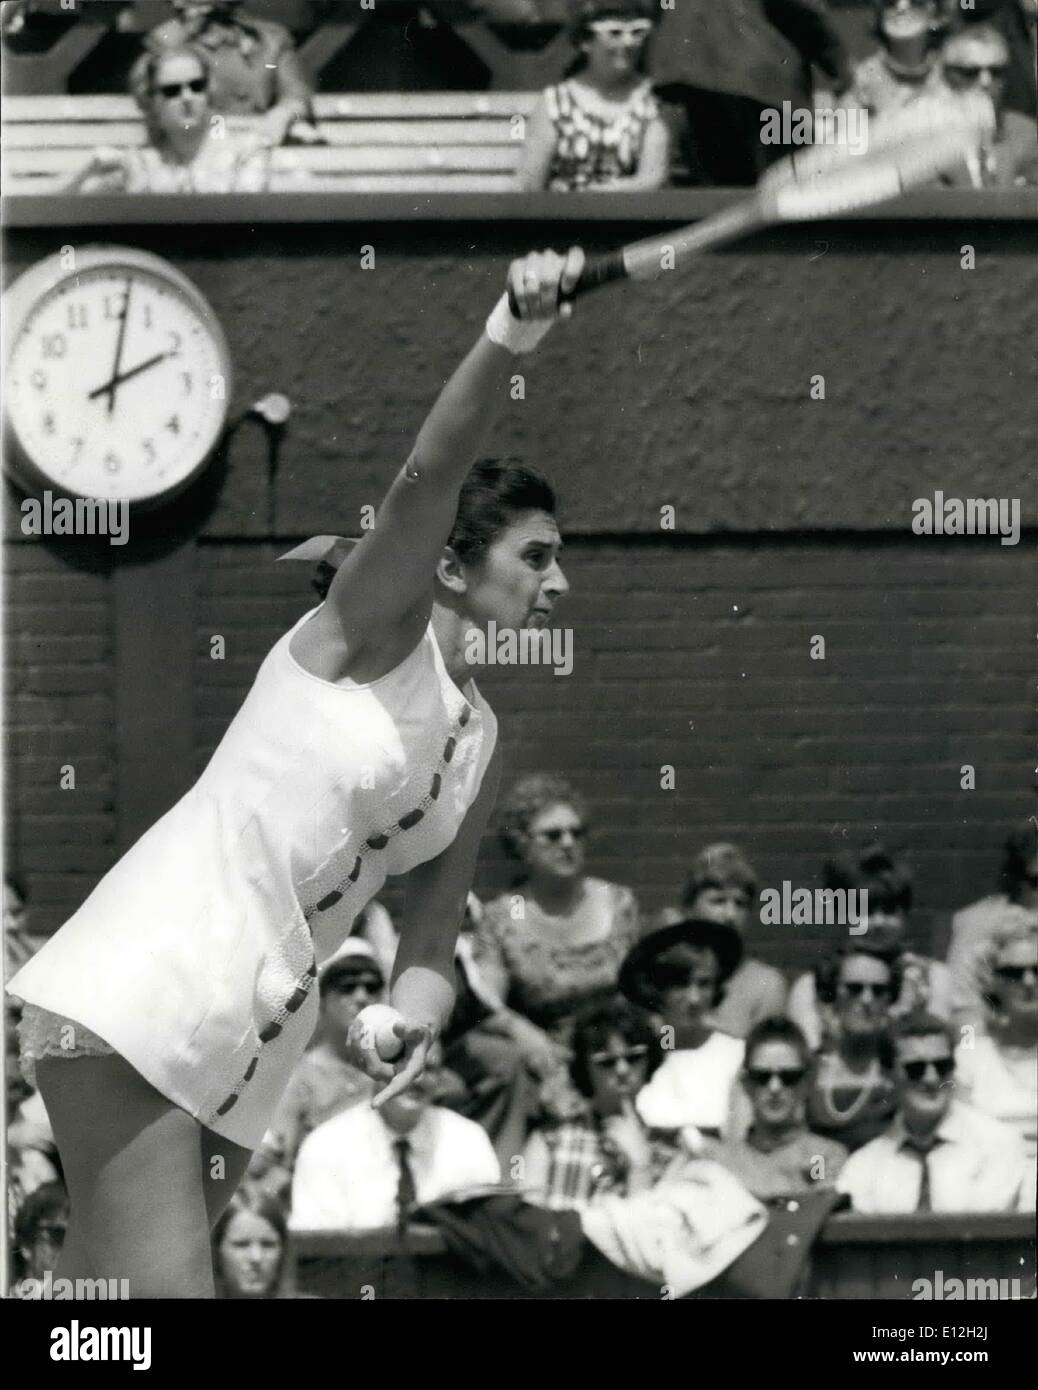 3. Januar 2012 - Wimbledon Open Tennis Championships. Frauen Halbfinale. Miss J. Tegart V Miss N. Richey. Foto zeigt Miss Judy Tegart (Australien), im Spiel gegen Miss N.Richey (USA), während heute ihr Match in Wimbledon. Judy Tegart gewann das Finale zu erreichen Stockfoto